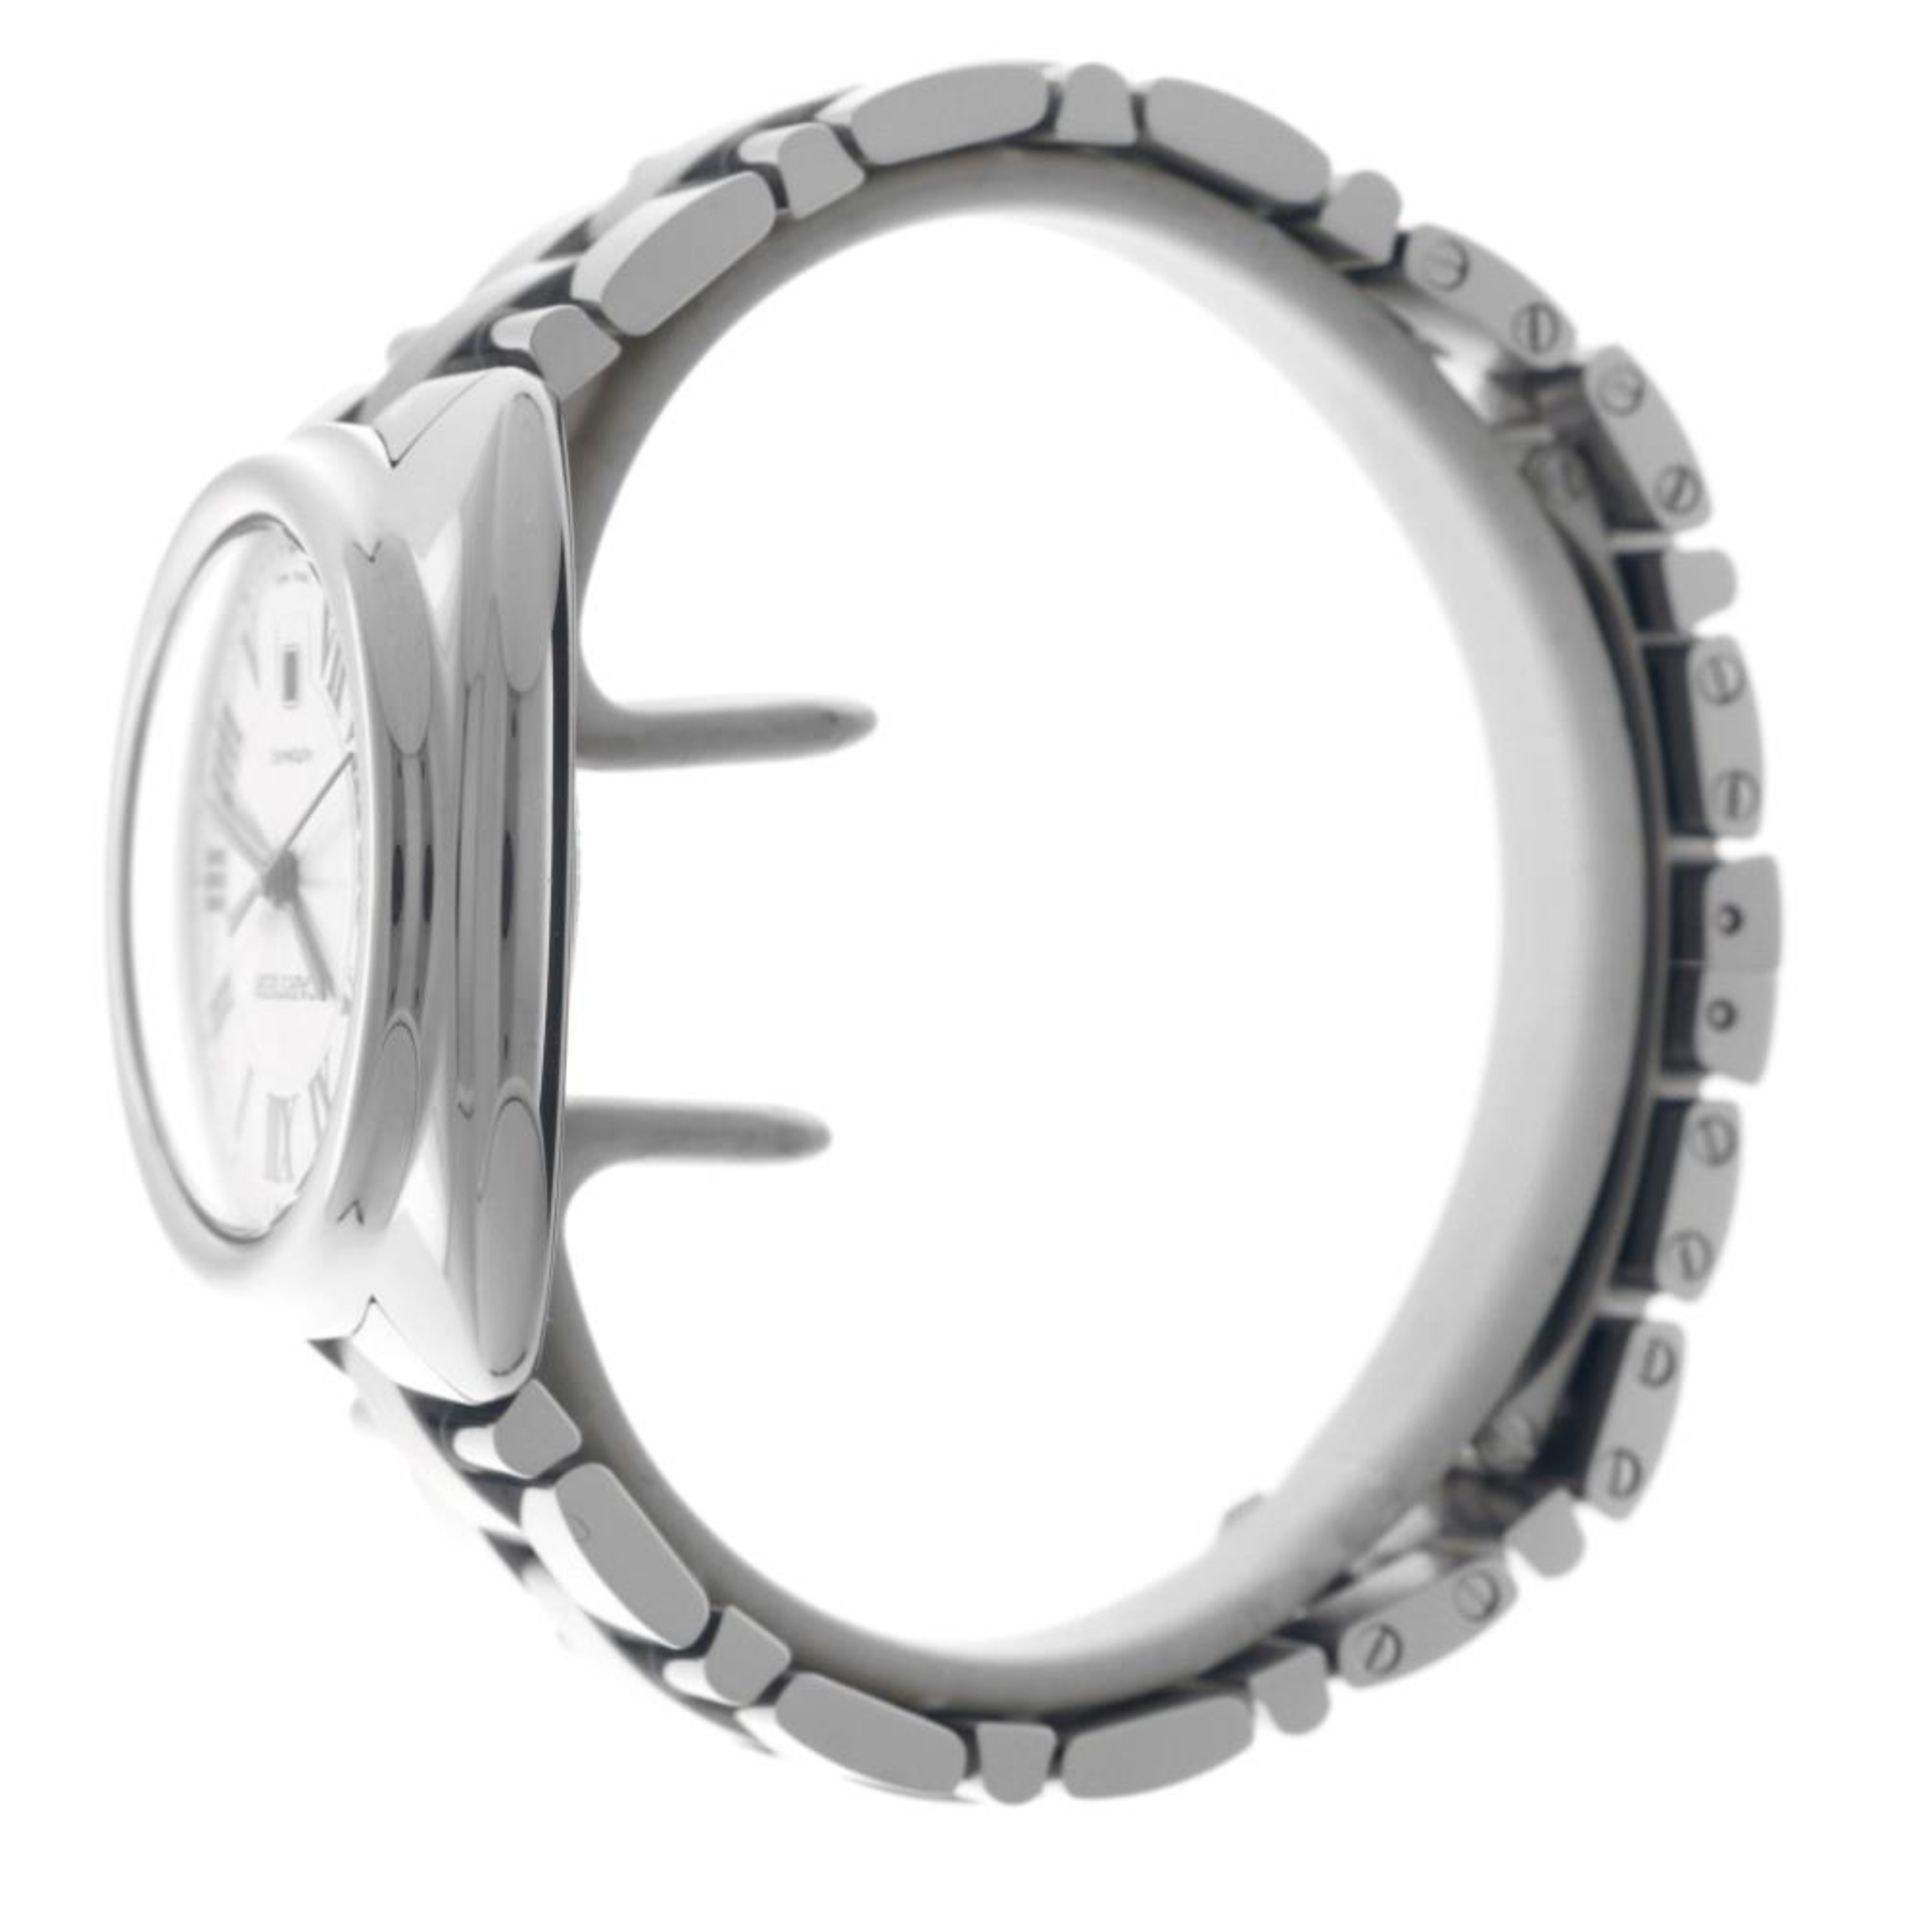 Cartier Clé WSCL0005 - Men's watch - 2020. - Image 12 of 12